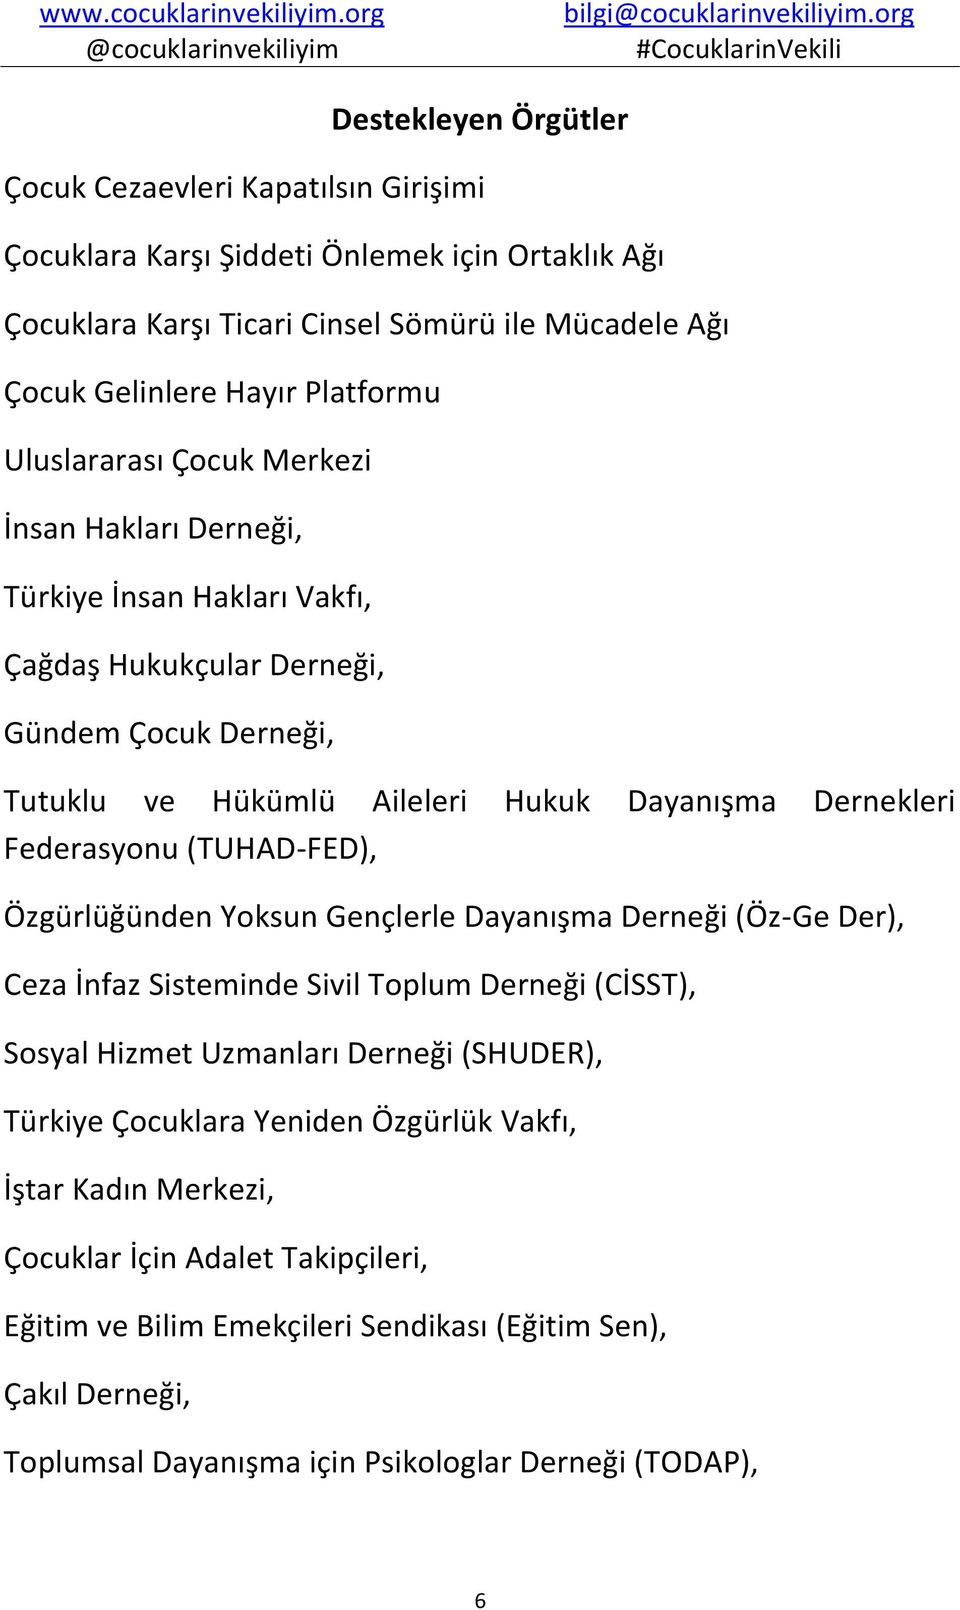 Federasyonu (TUHAD-FED), Özgürlüğünden Yoksun Gençlerle Dayanışma Derneği (Öz-Ge Der), Ceza İnfaz Sisteminde Sivil Toplum Derneği (CİSST), Sosyal Hizmet Uzmanları Derneği (SHUDER), Türkiye